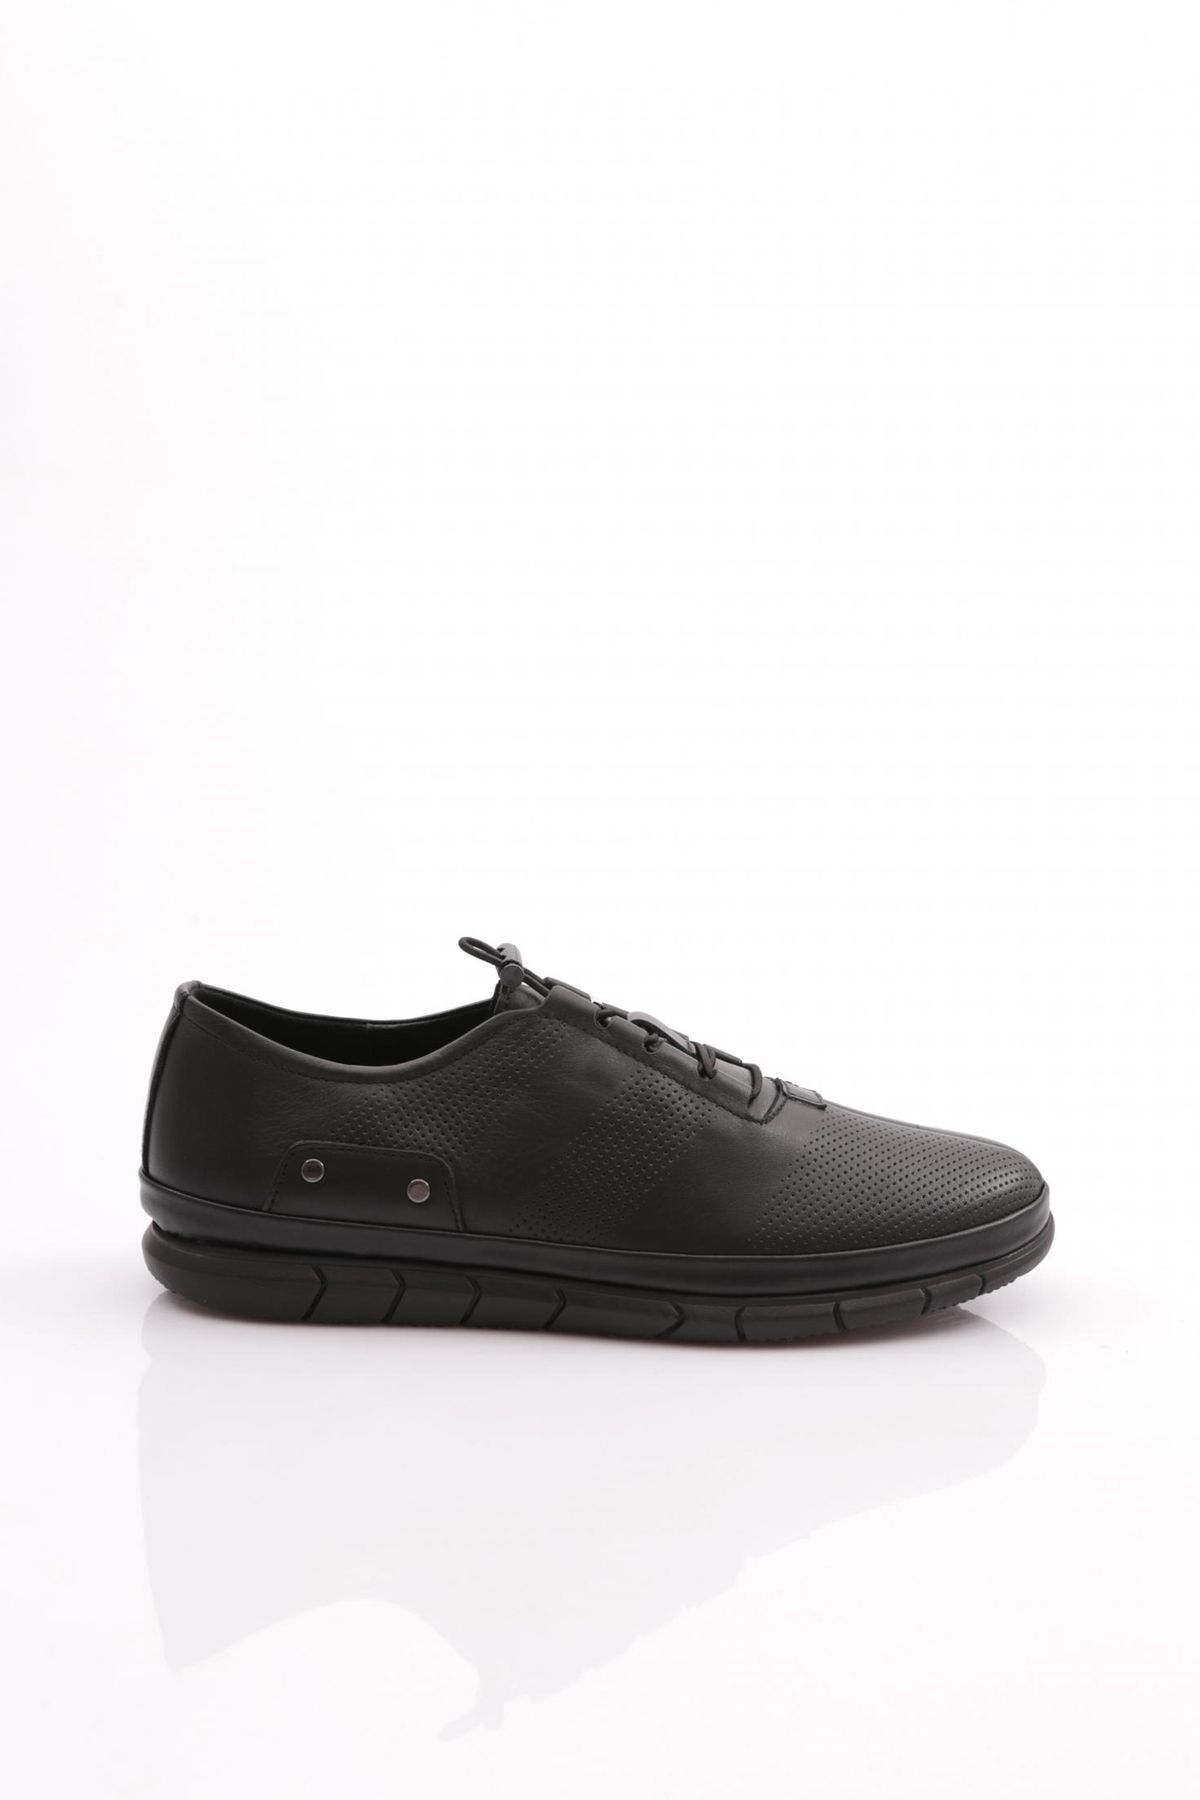 Dgn 6022 Erkek Lastik Bağcıklı Sneaker Ayakkabı Siyah